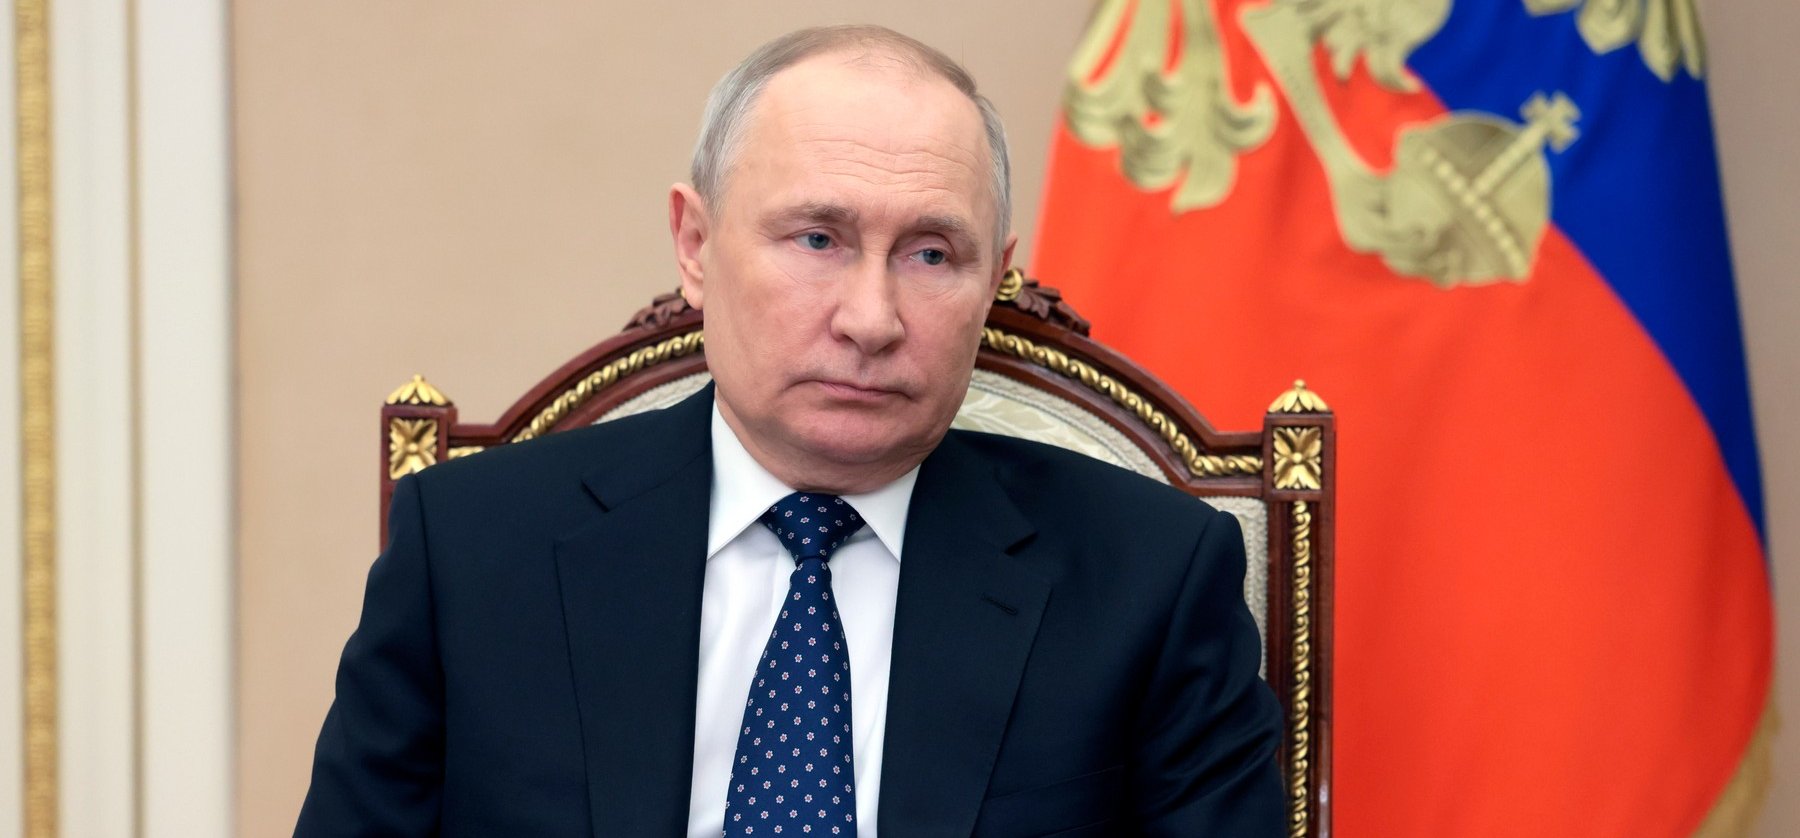 Putyin döbbenetes döntést hozott, ez mindent megváltoztat - Felkészülhetünk a legrosszabbra?